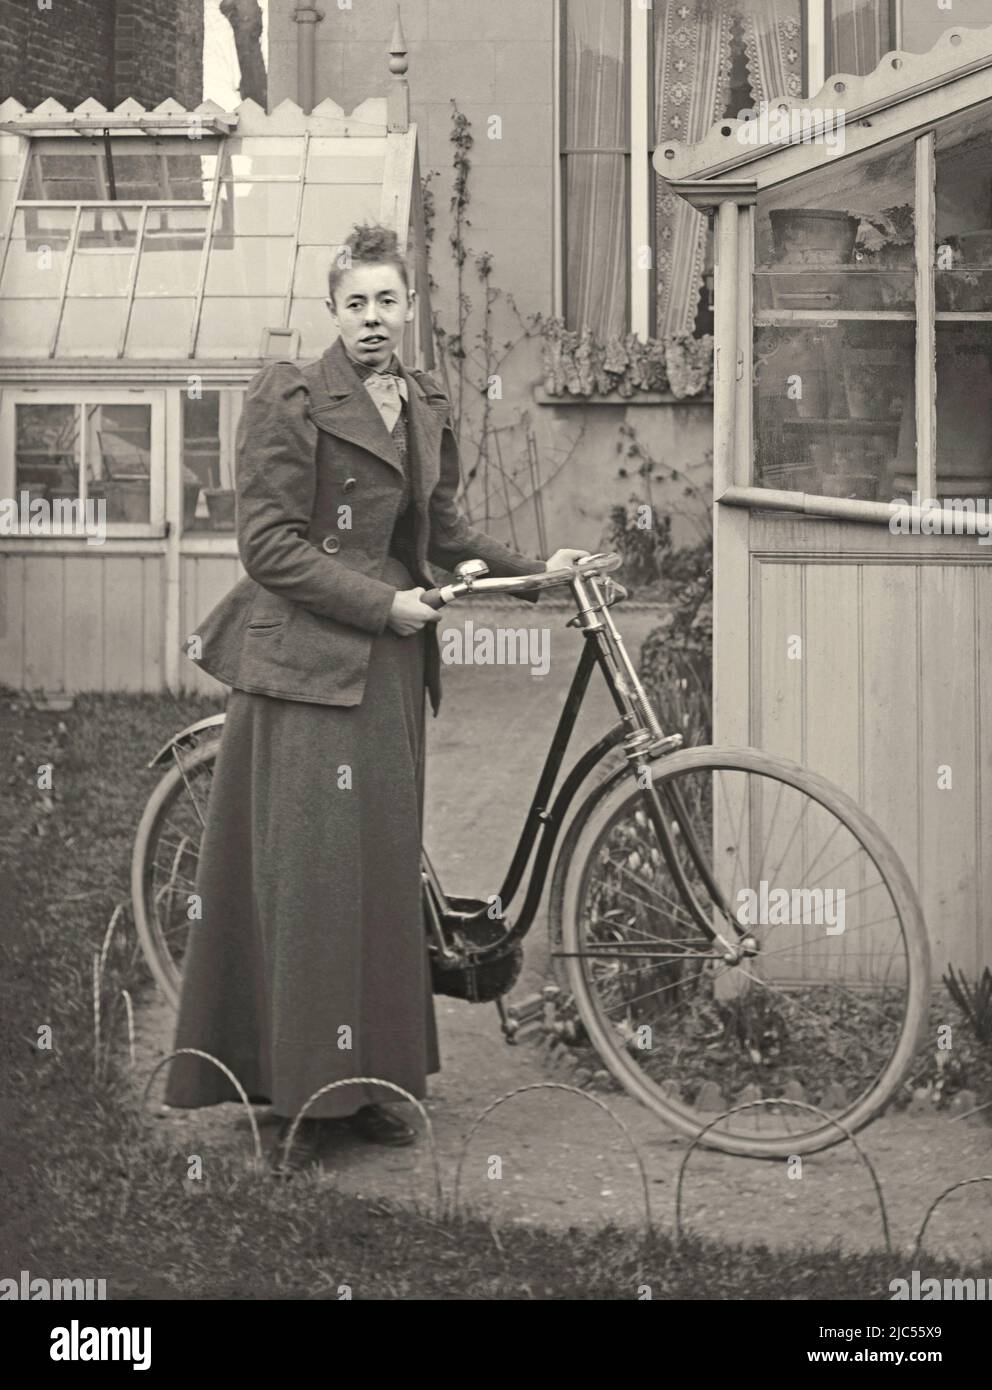 Eine Frau posiert mit dem Fahrrad ihrer Frau in ihrem Garten, Großbritannien c. 1900. Sie trägt geeignete Kleidung zum Reiten. Der Garten hinter dem Haus beherbergt zwei Gewächshäuser. Dies ist von einem alten viktorianischen Glasnegativ – einem Vintage 1800s/1900s Foto. Stockfoto